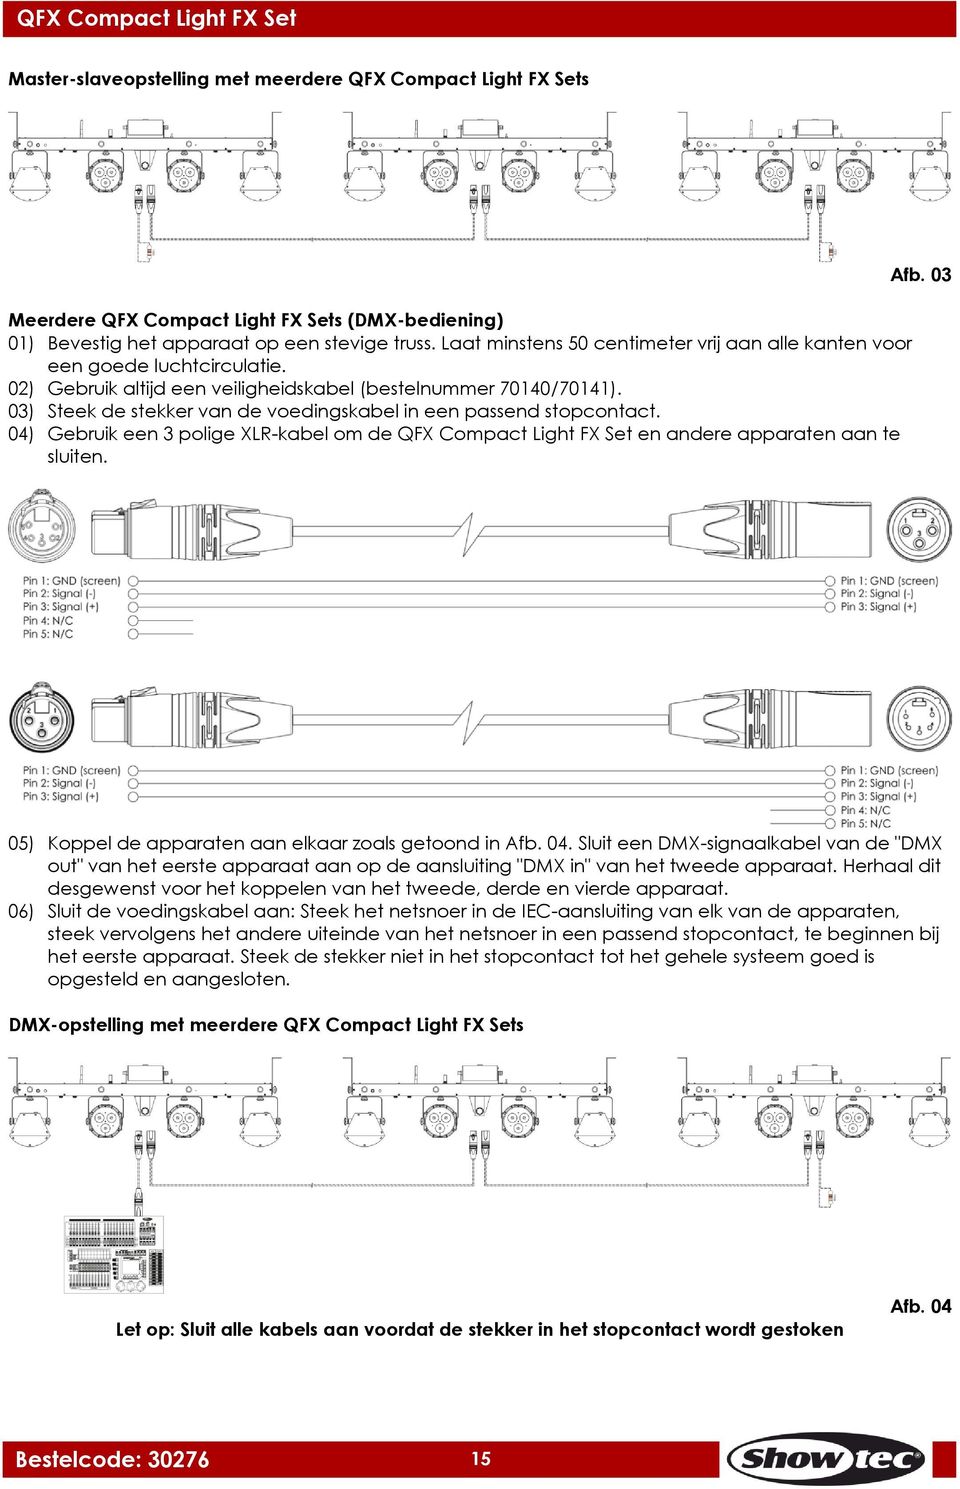 03) Steek de stekker van de voedingskabel in een passend stopcontact. 04) Gebruik een 3 polige XLR-kabel om de QFX Compact Light FX Set en andere apparaten aan te sluiten. Afb.